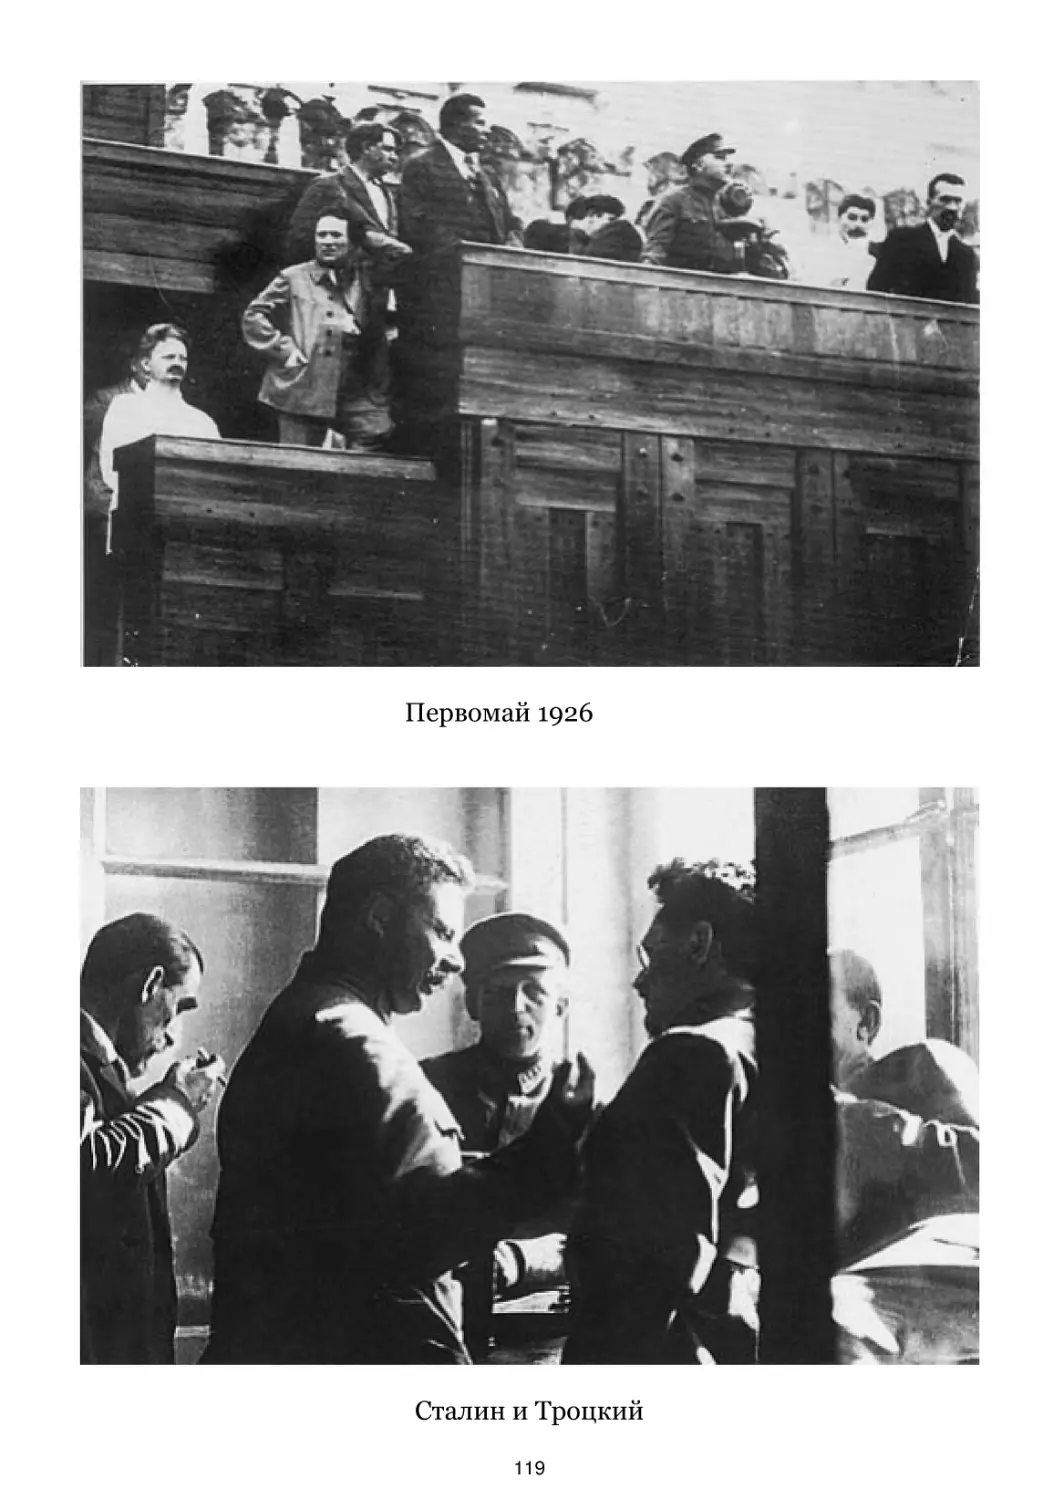 Первомай 1926
Сталин и Троцкий